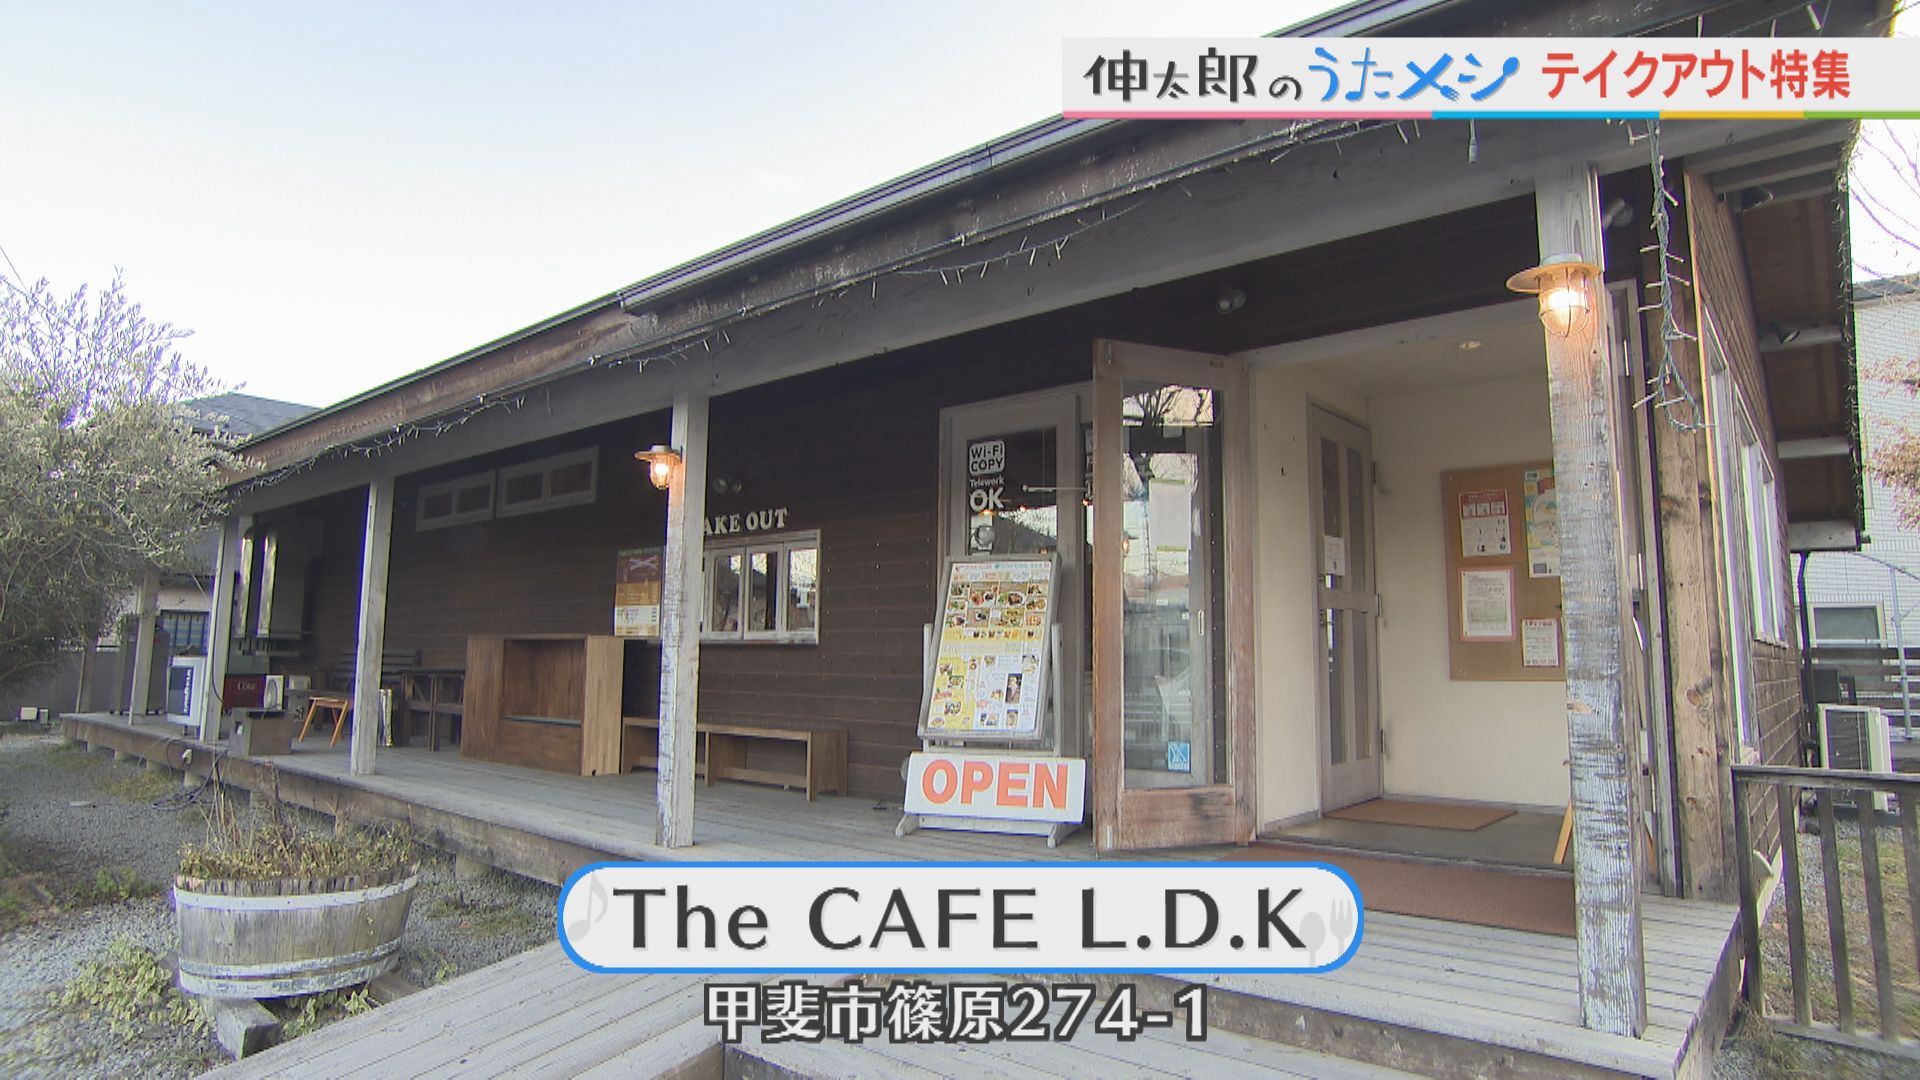 カレーが人気の『The CAFE L.D.K』